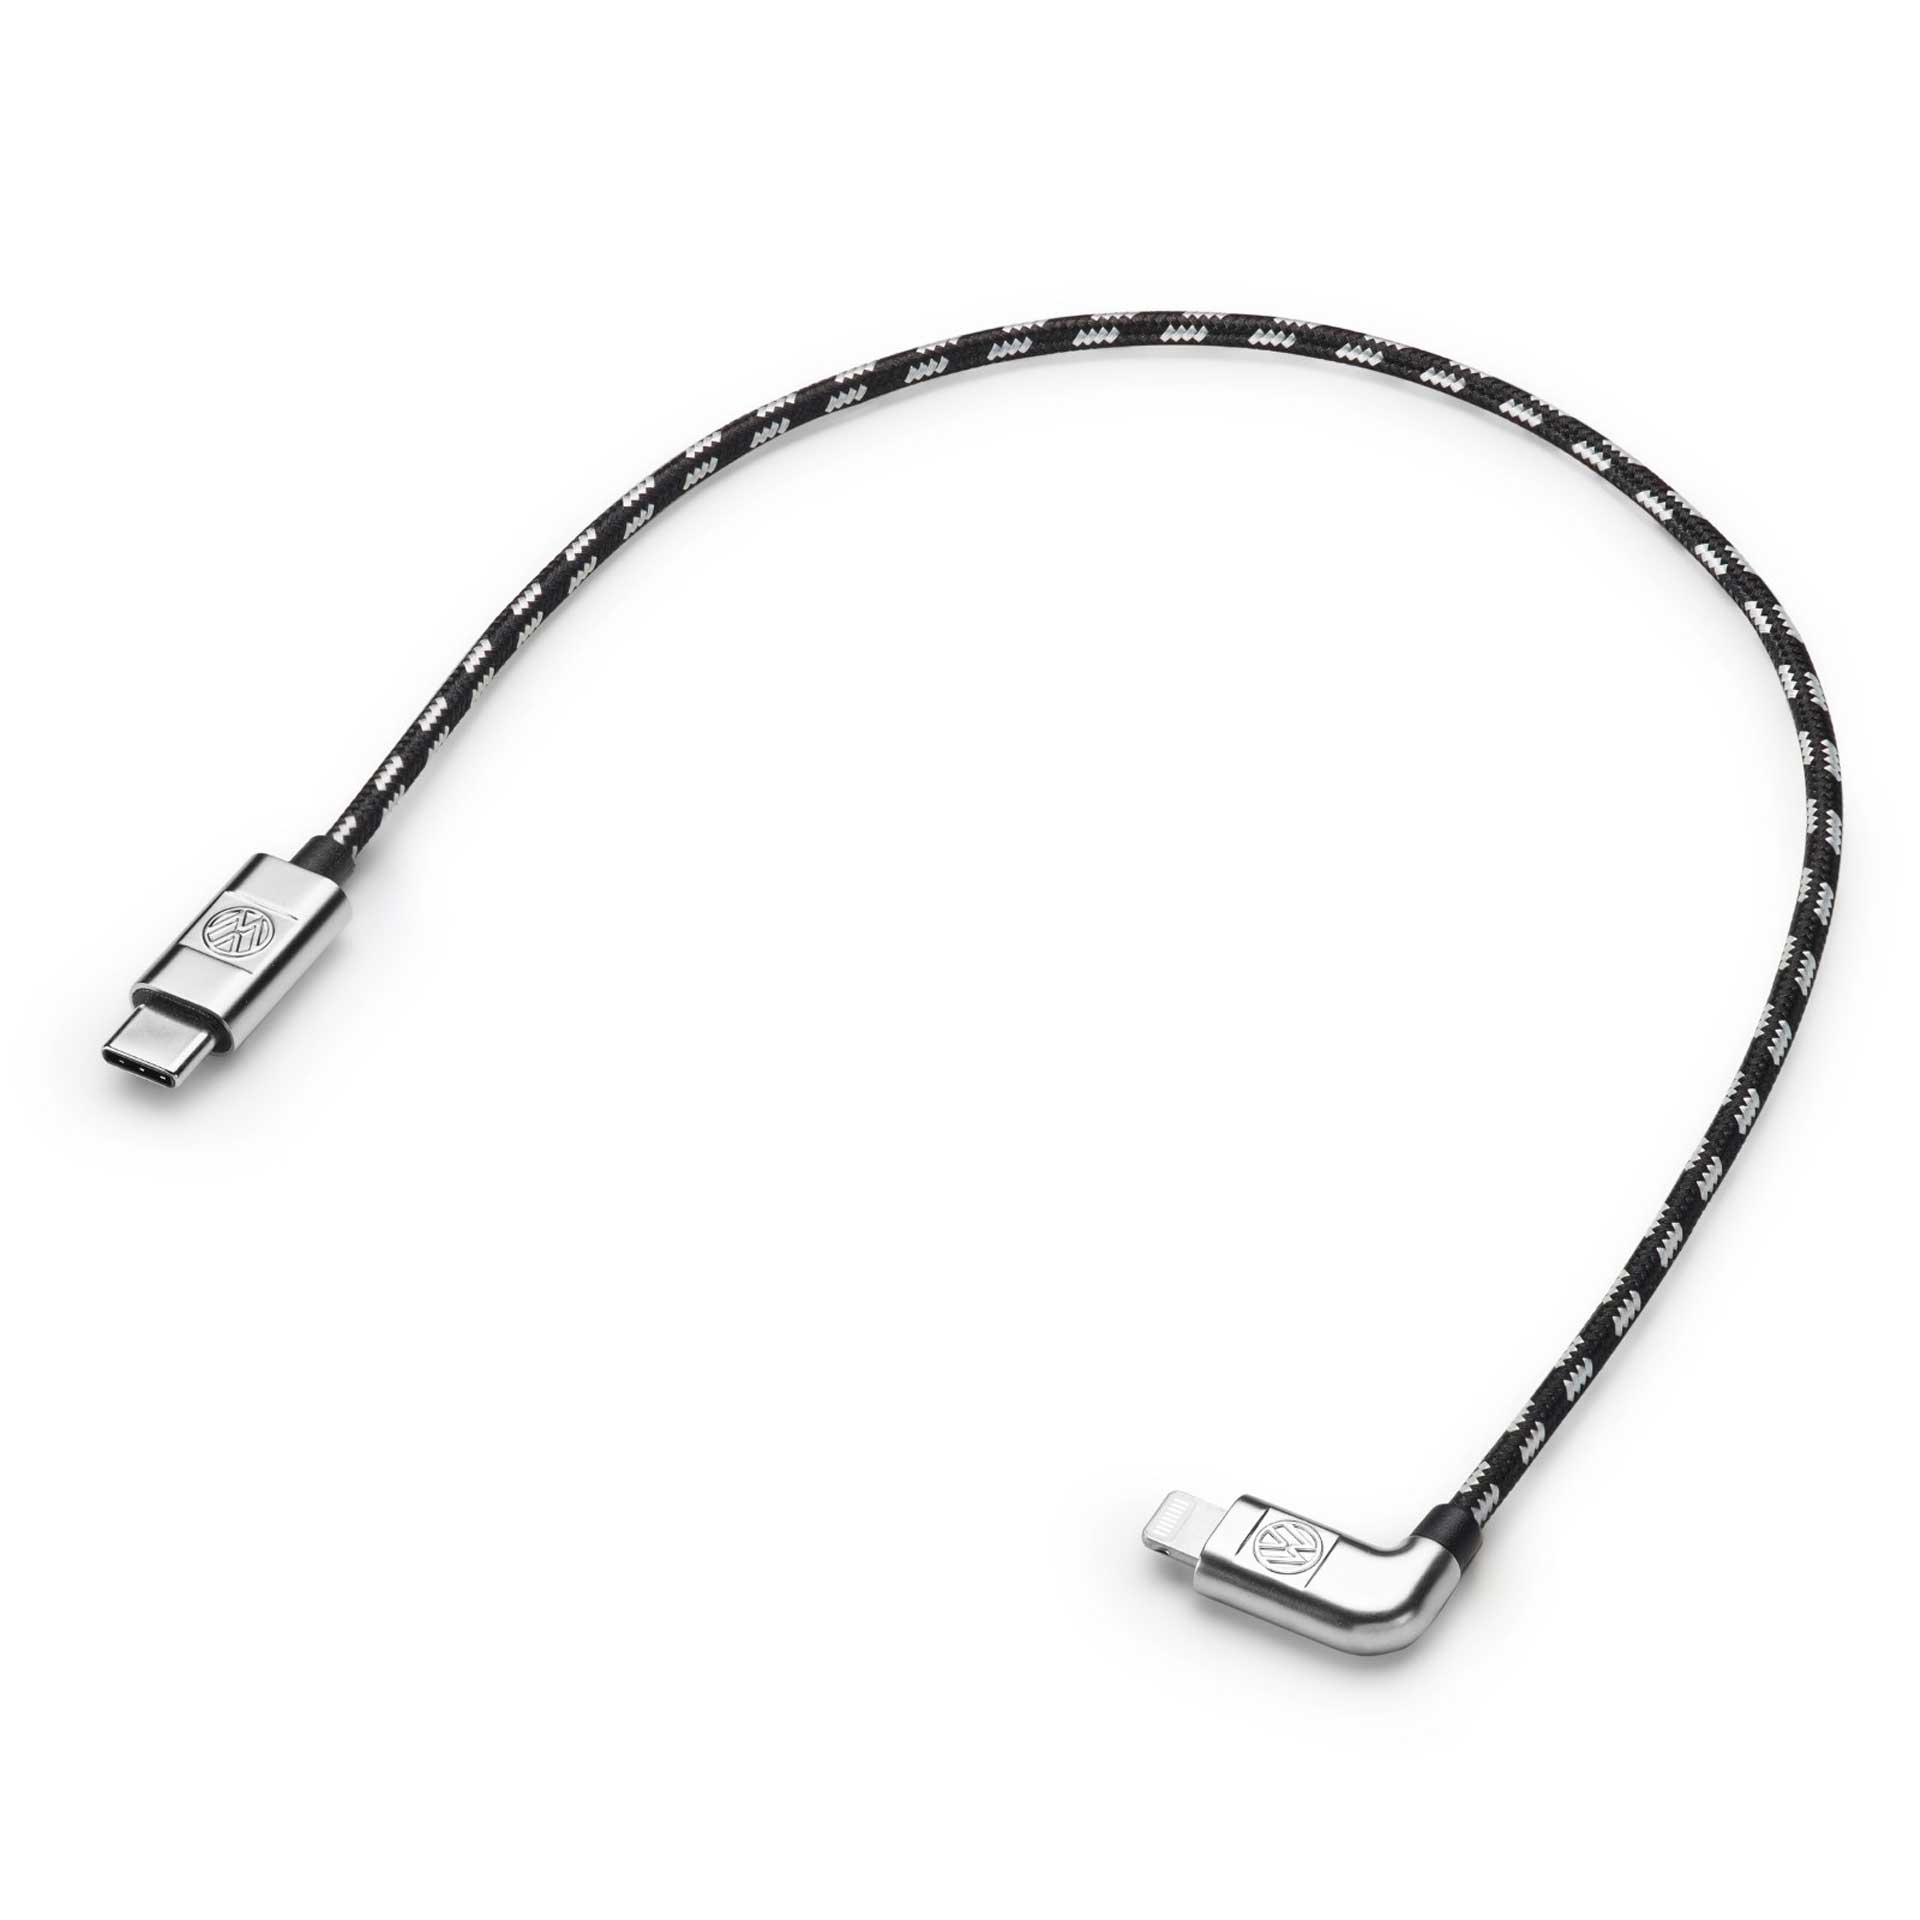 Volkswagen Anschlusskabel Ladekabel USB-C auf Apple Lightning 30 cm 000051446AC